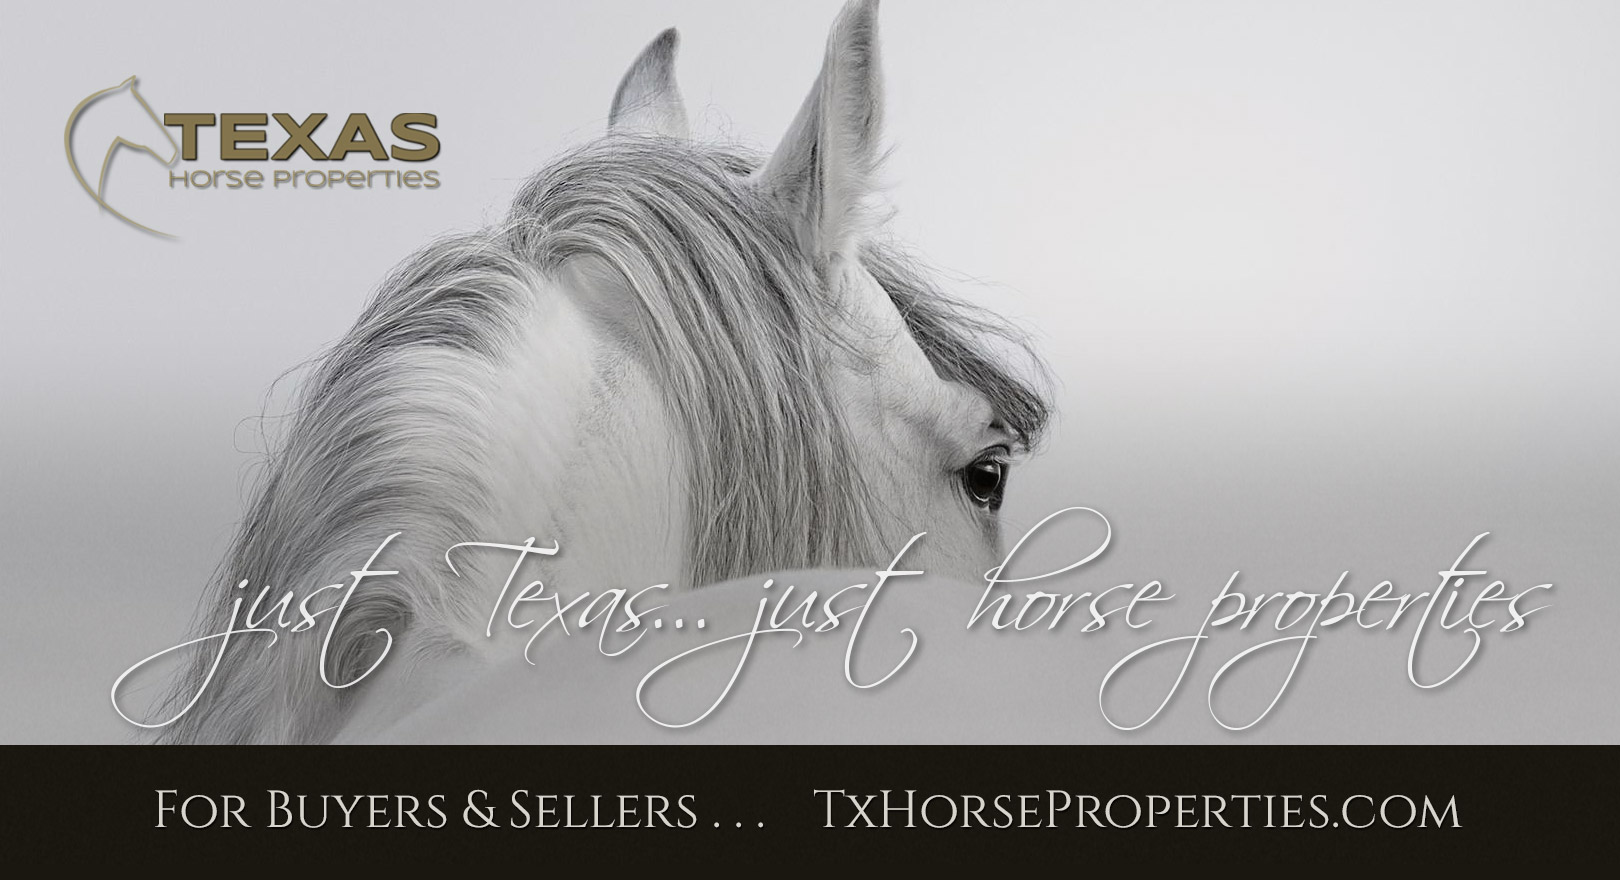 Texas Horse Properties